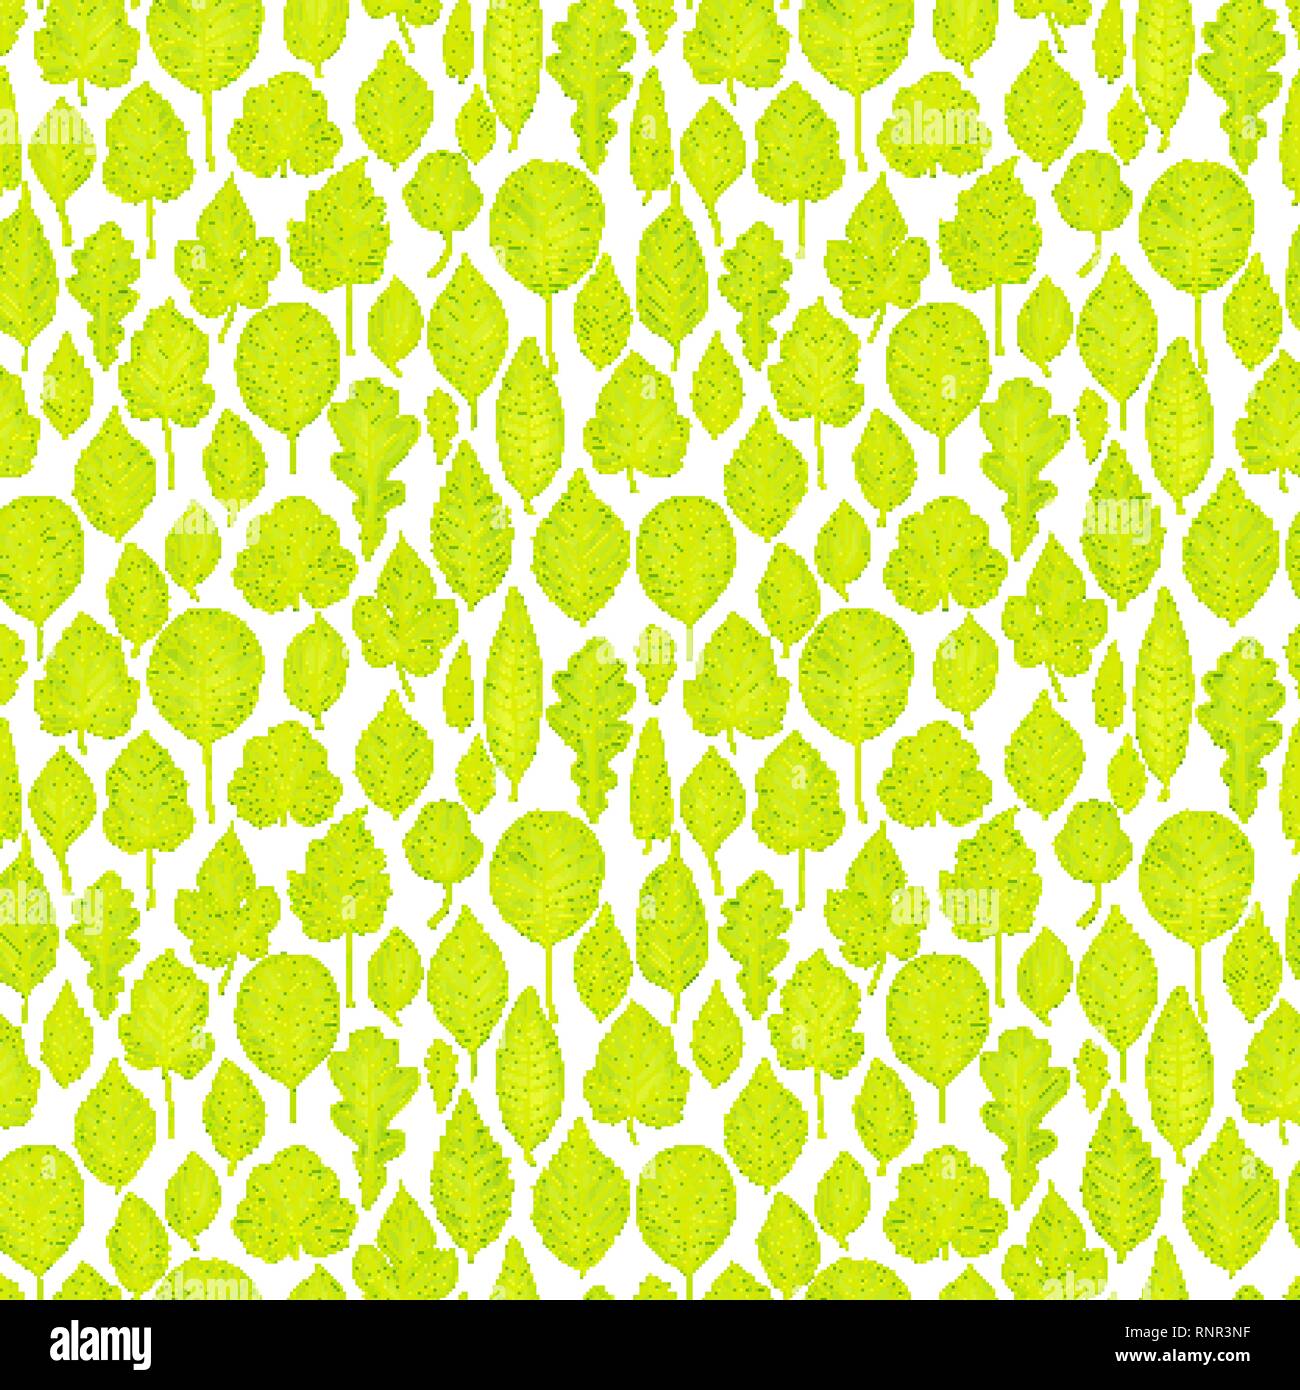 Nahtlose Muster der grüne Blätter Hintergrund Stock Vektor